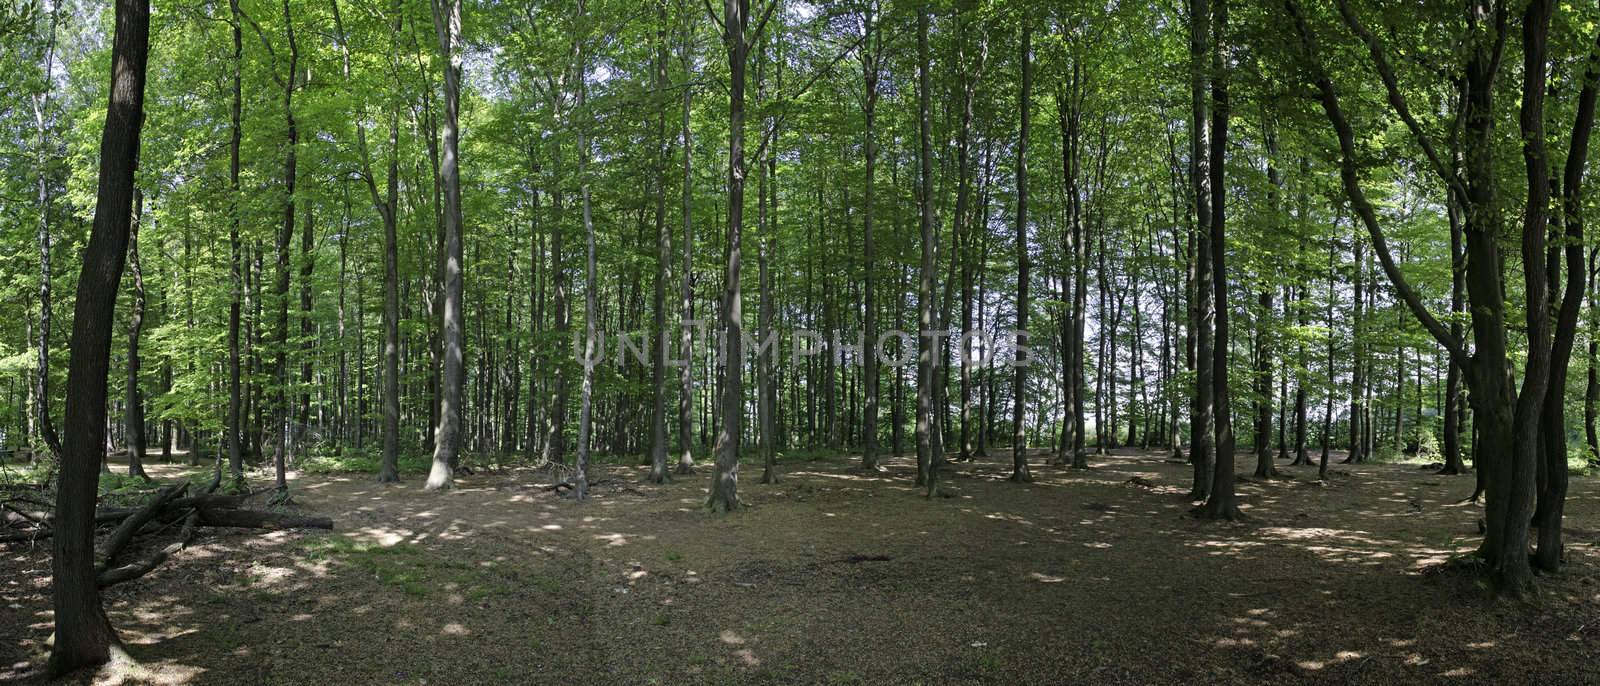 Woods of Belgium by jovannig